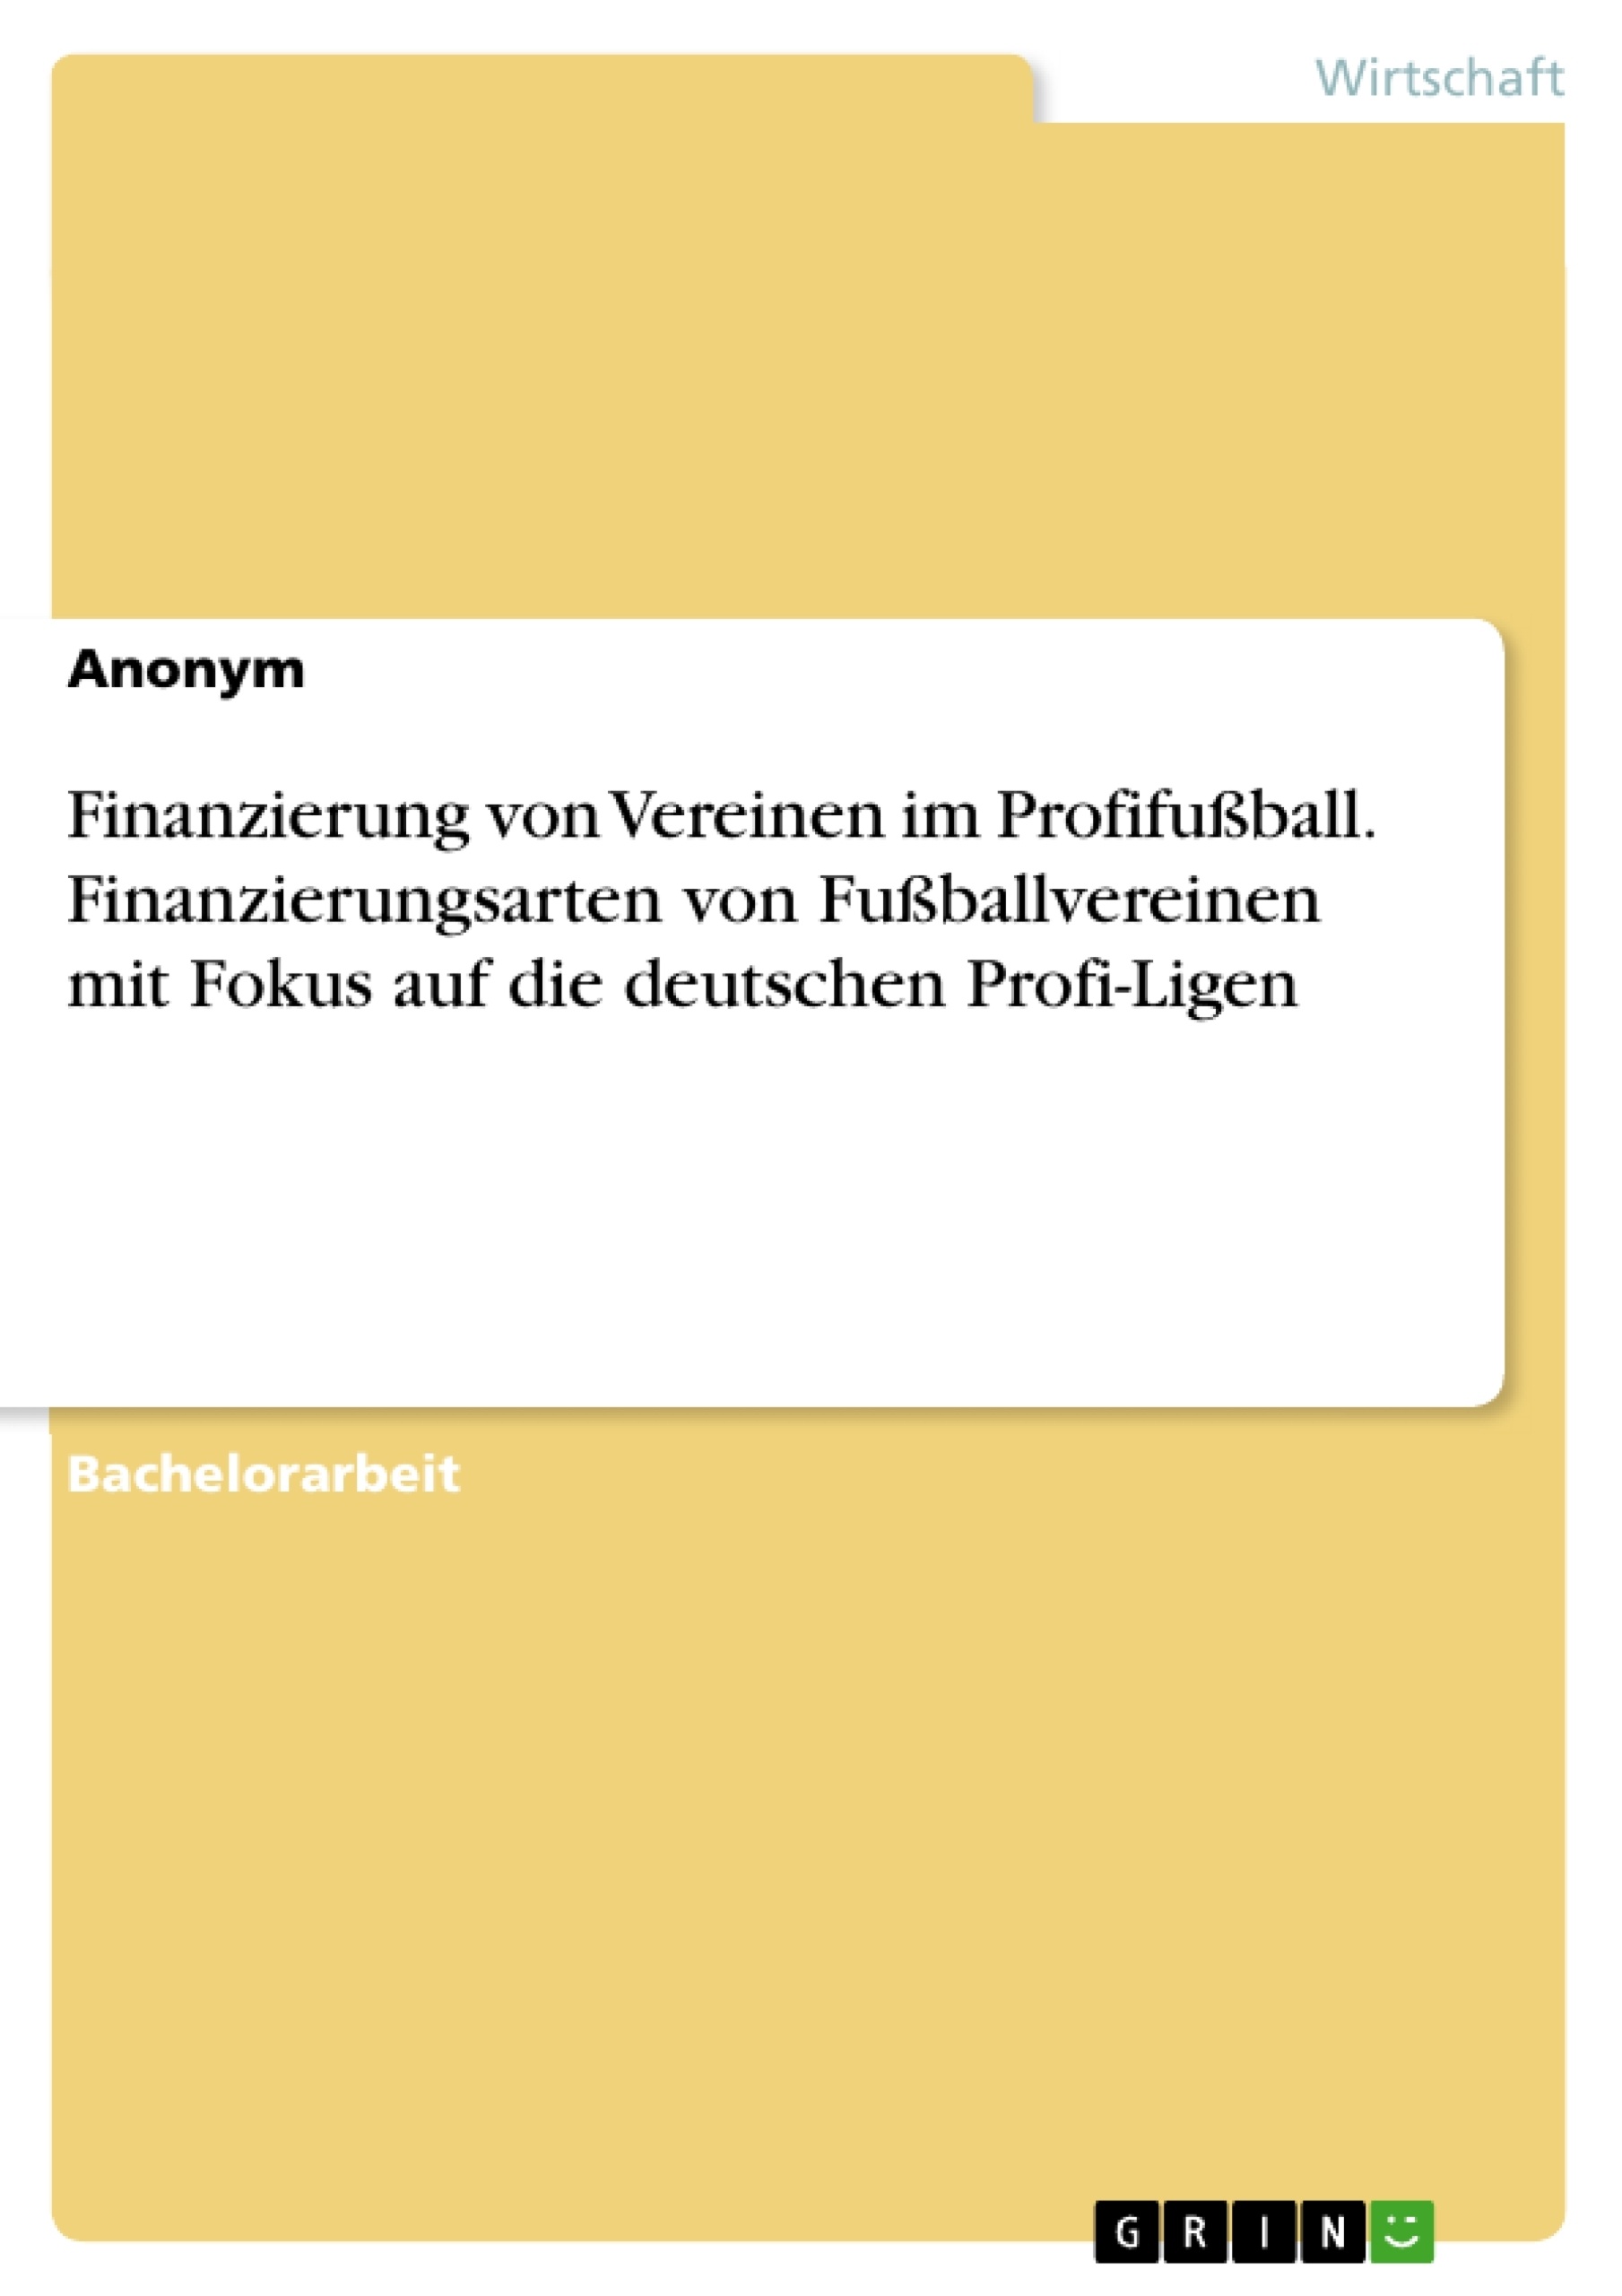 Title: Finanzierung von Vereinen im Profifußball. Finanzierungsarten von Fußballvereinen mit Fokus auf die deutschen Profi-Ligen